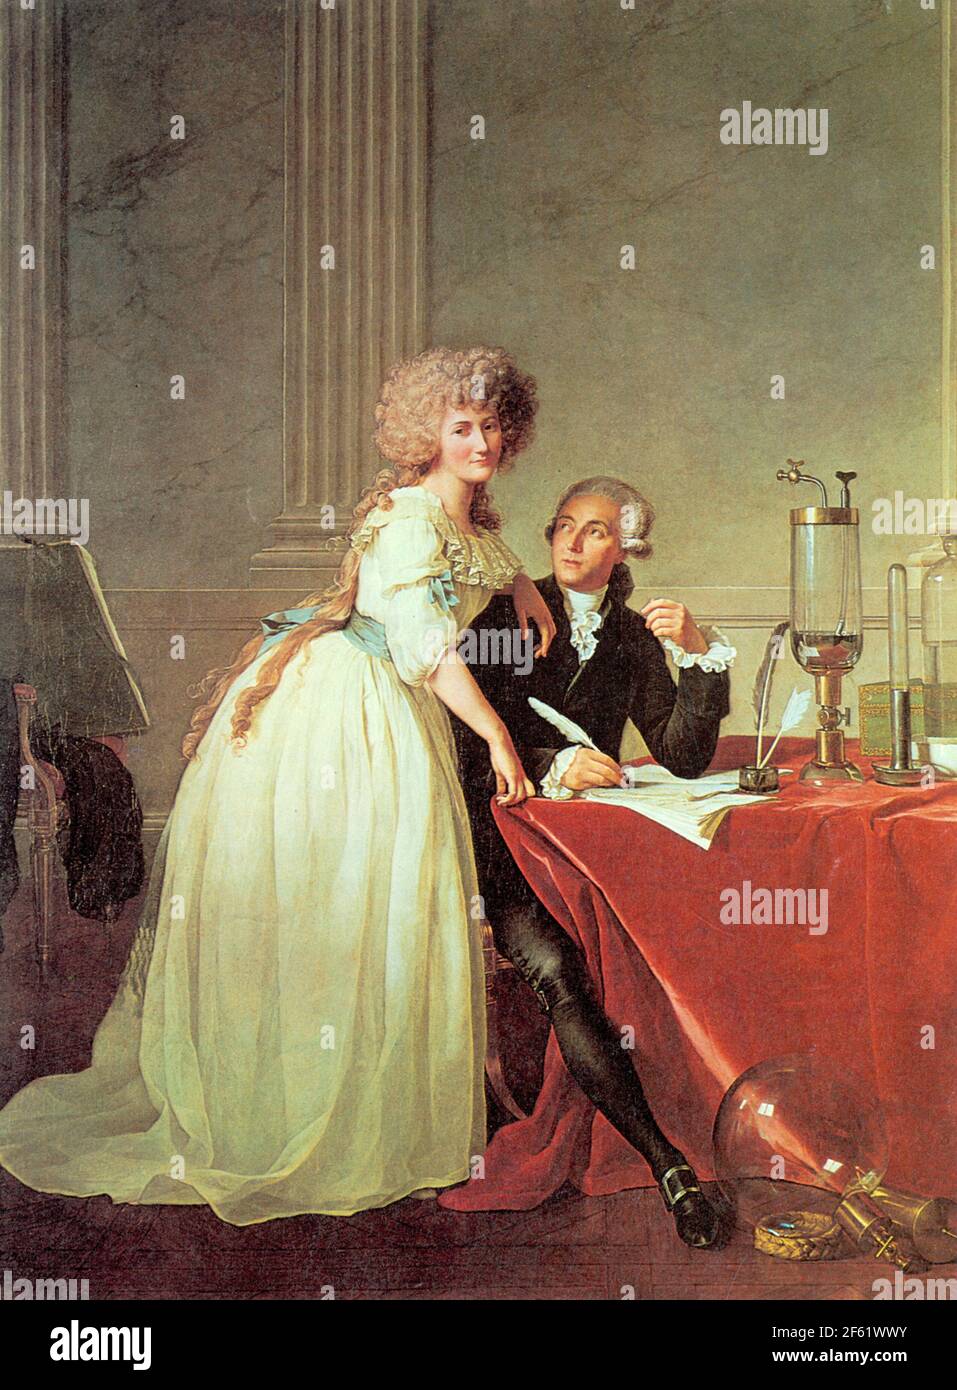 Valise - Mr Lavoisier et sa femme - Tableau de Jacques-Louis David -  35x55x20 cm 